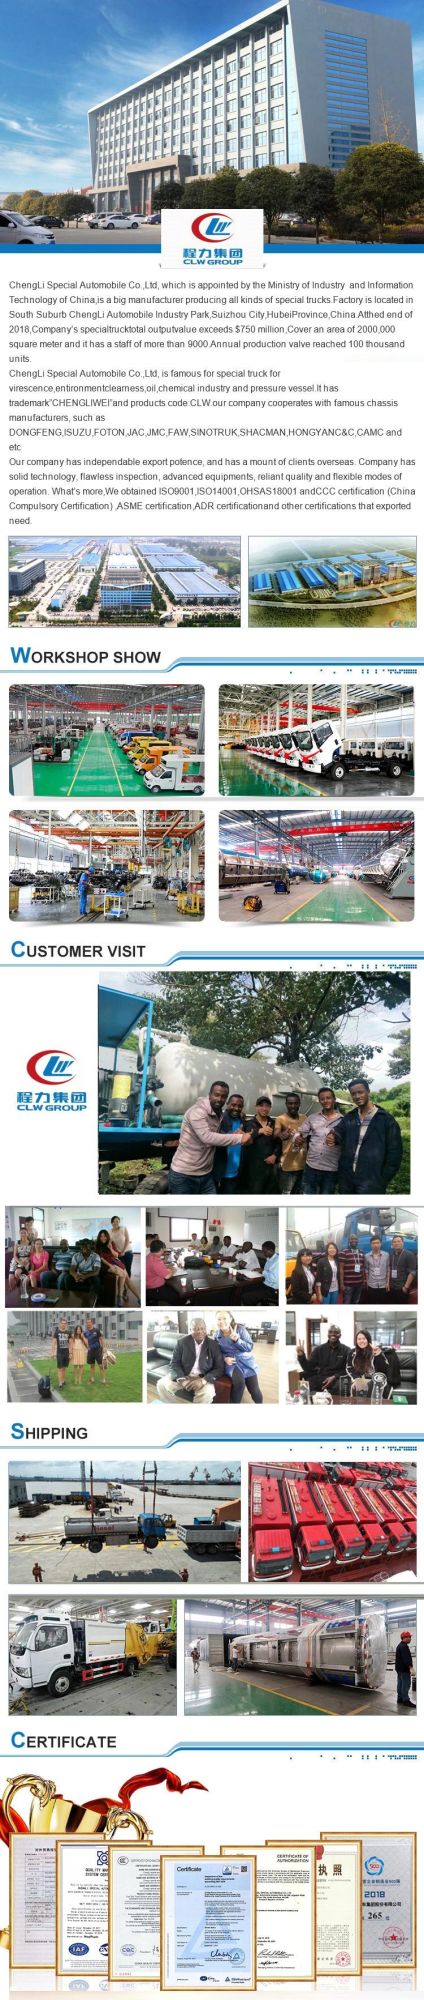 China Best Janpan Brand I Suzu Sewage Treatment Vehicles 5000L 6 Cbm Tanker Mobile Sewage Suction Truck